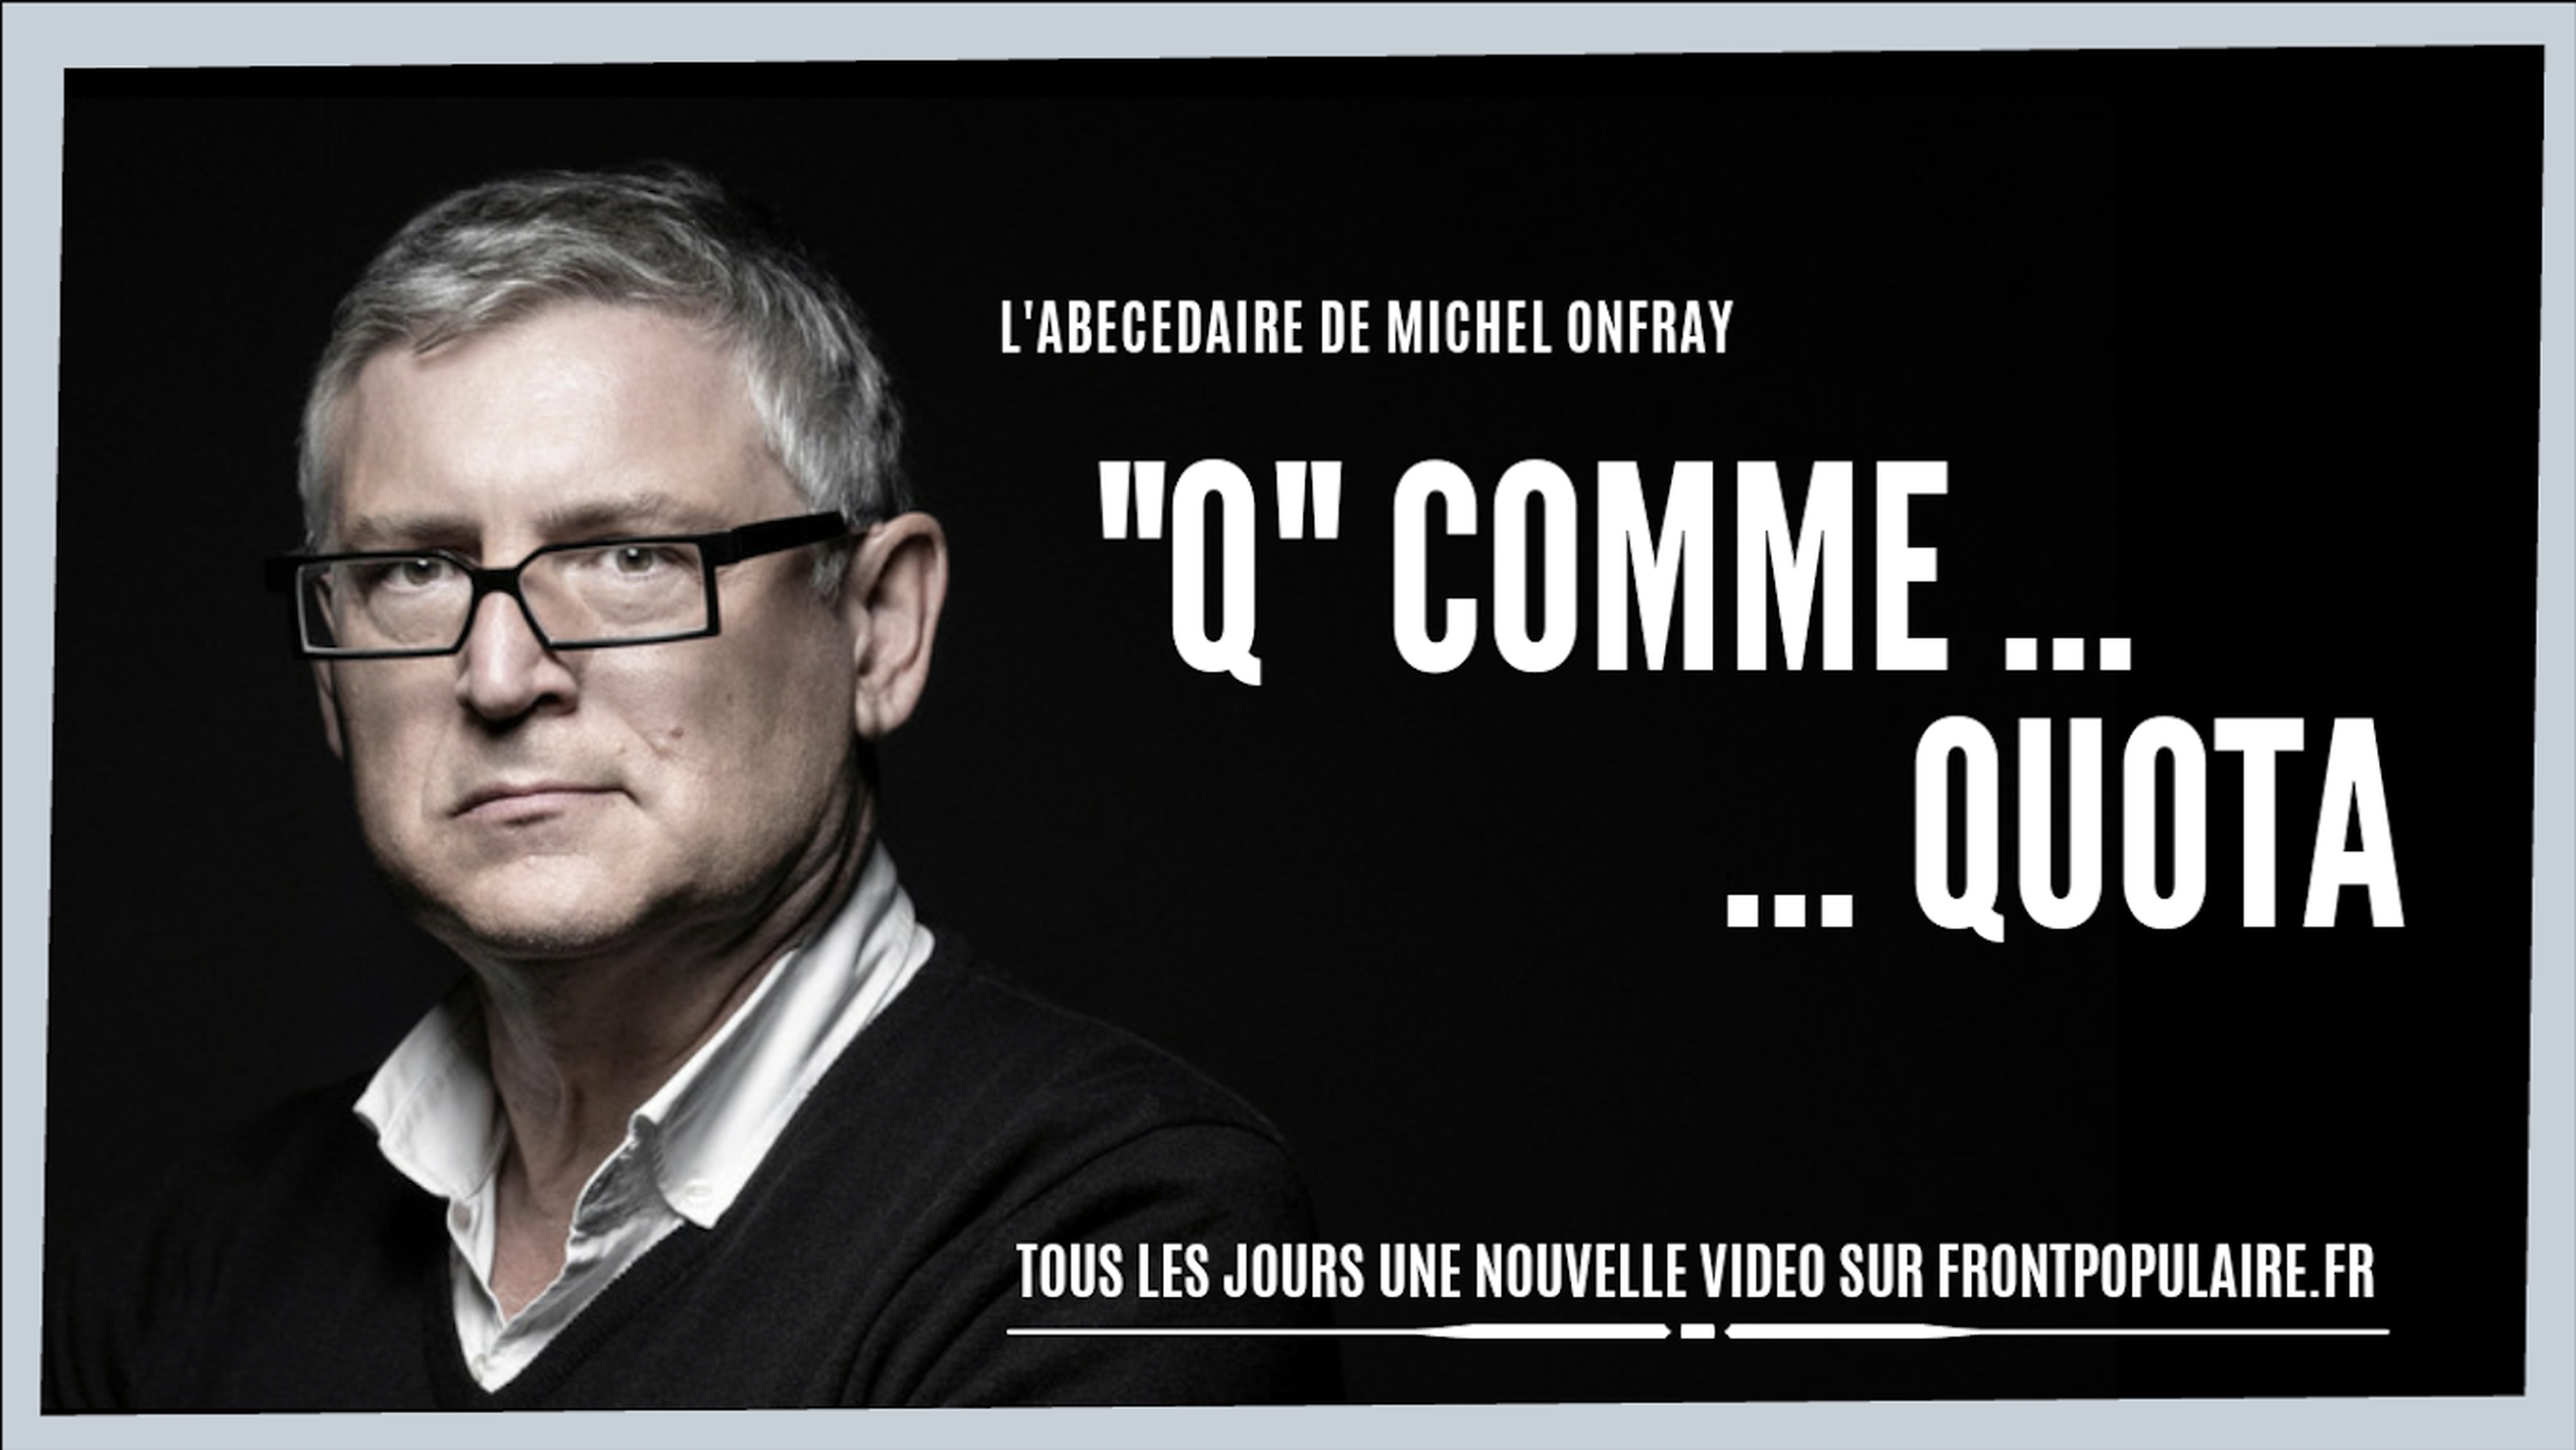 L’abécédaire de Michel Onfray: Q comme Quota